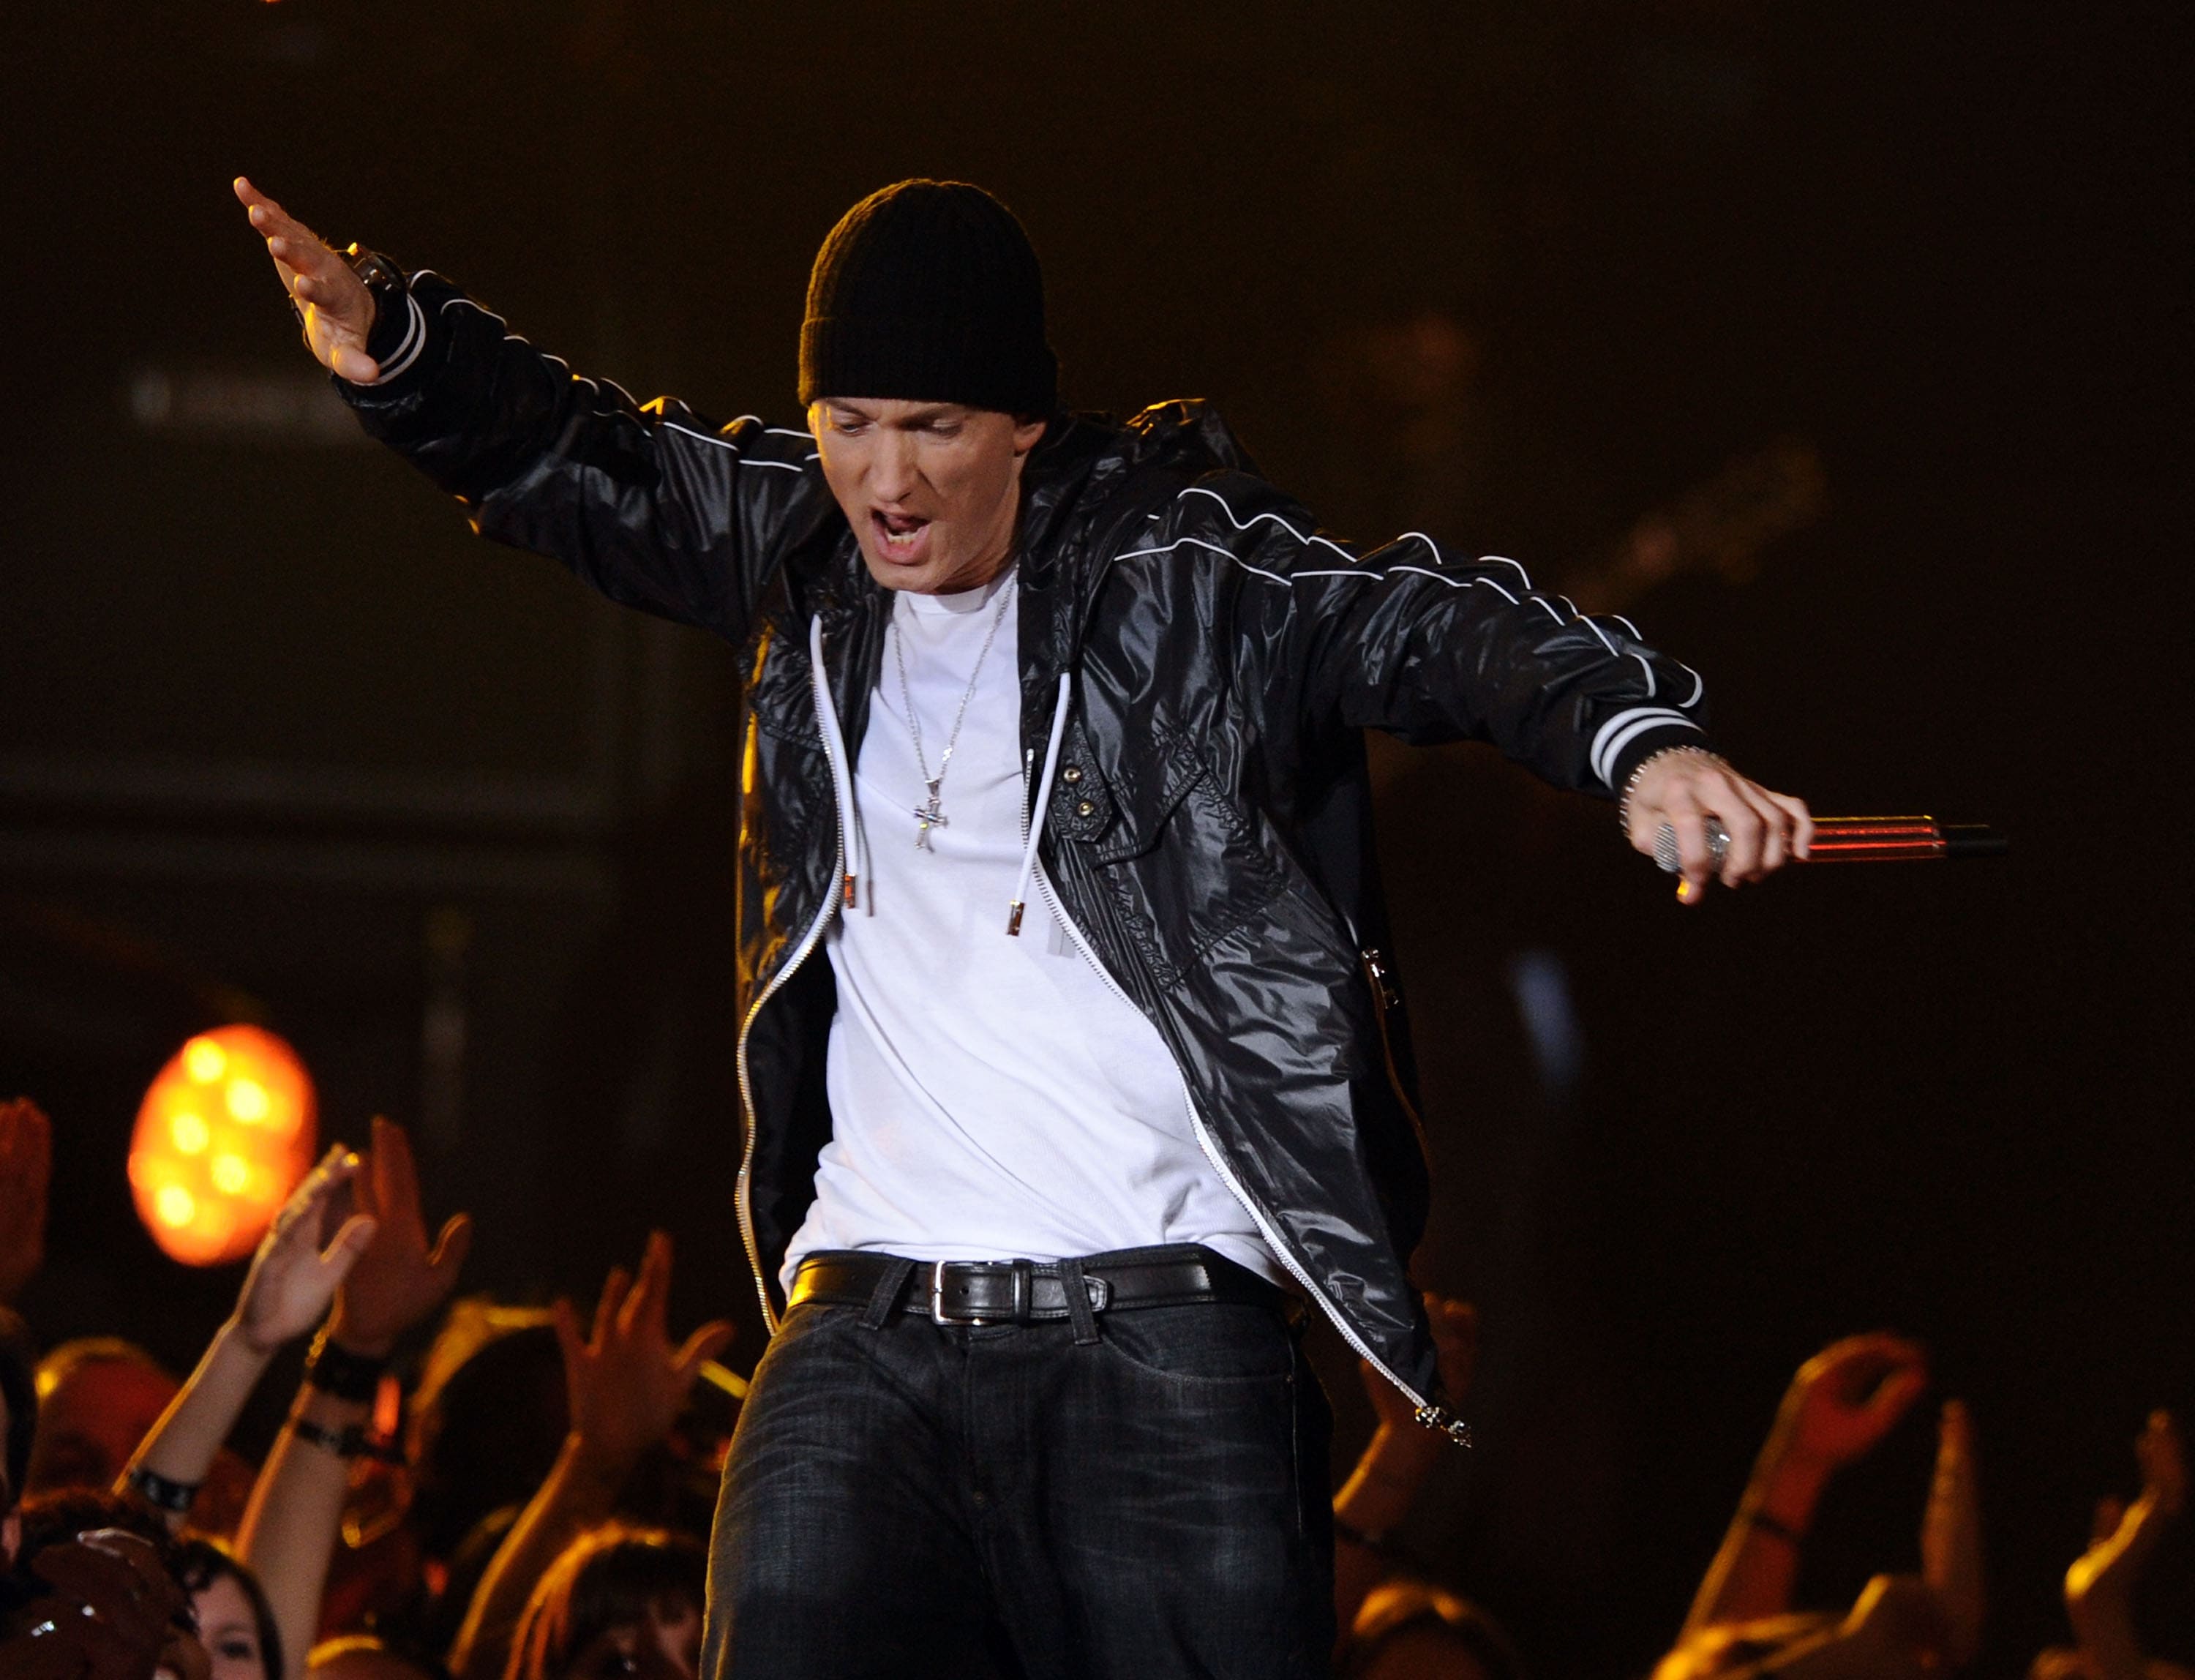 Marshall Mathers è l’artista più venduto al mondo oltre a essere uno dei migliori rapper di sempre: dal suo inizio nel 1996 con l’album di debutto Album Infinite, Eminem ha prodotto alcuni dei migliori pezzi rap di sempre. Da un flow irriverente e ostinato all’ultimo singolo Walk on Water ft. Beyoncé, Eminem è stato in grado di esprimersi e di usare il suo talento per raggiungere il successo e produrre musica con alcuni dei migliori artisti rap e pop dagli anni 2000.